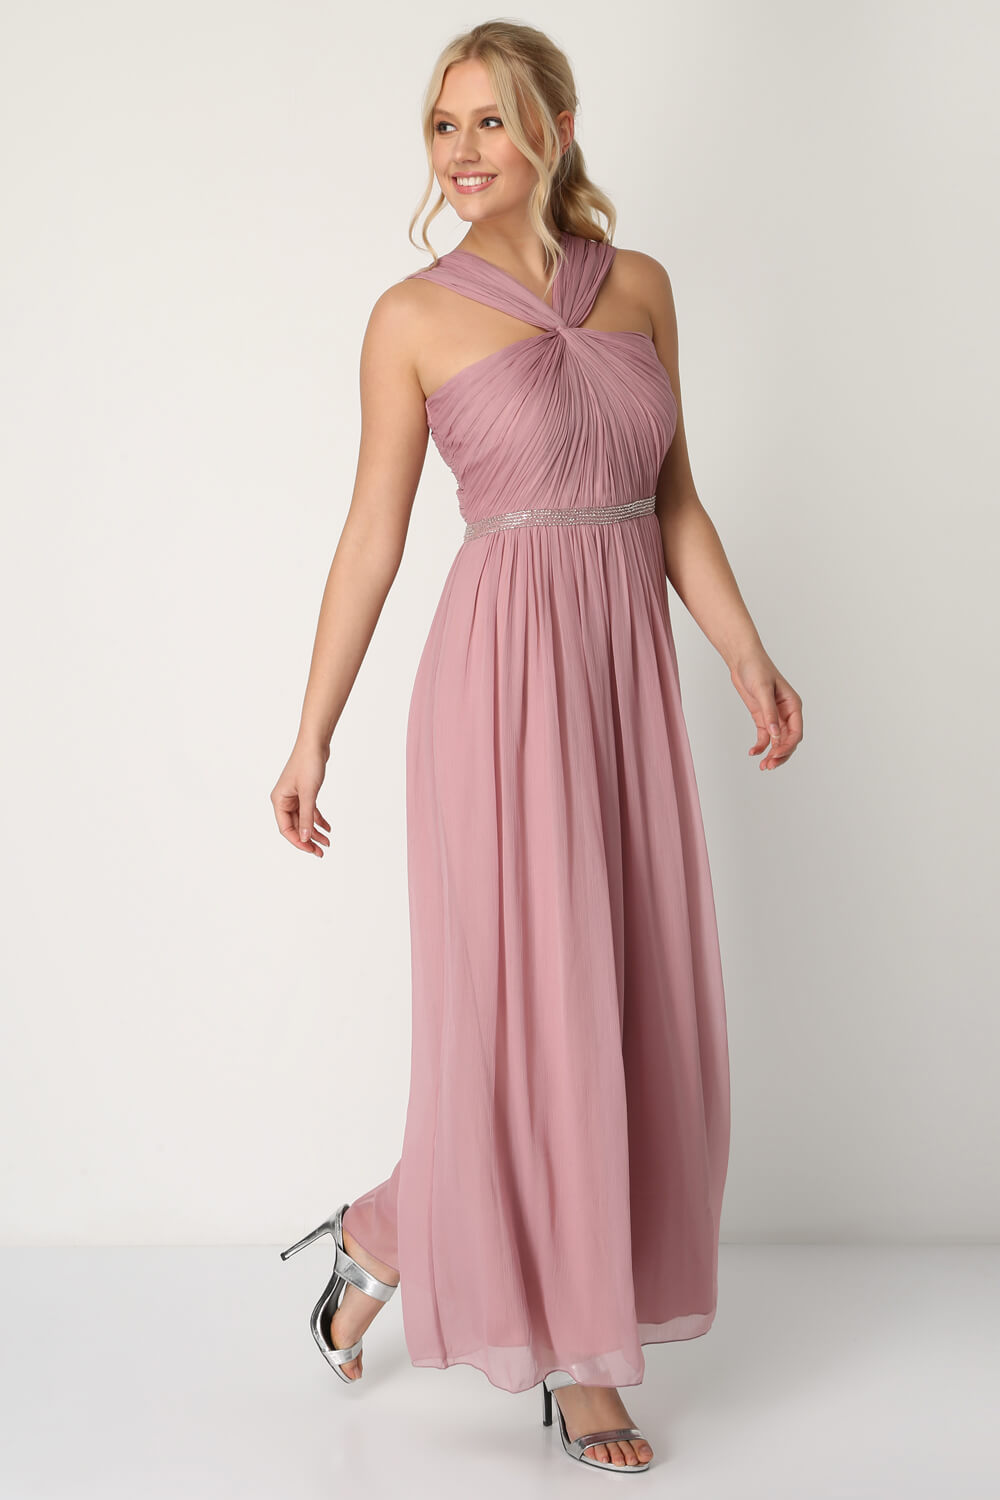 Rose Bead Embellished Maxi Dress, Image 2 of 4